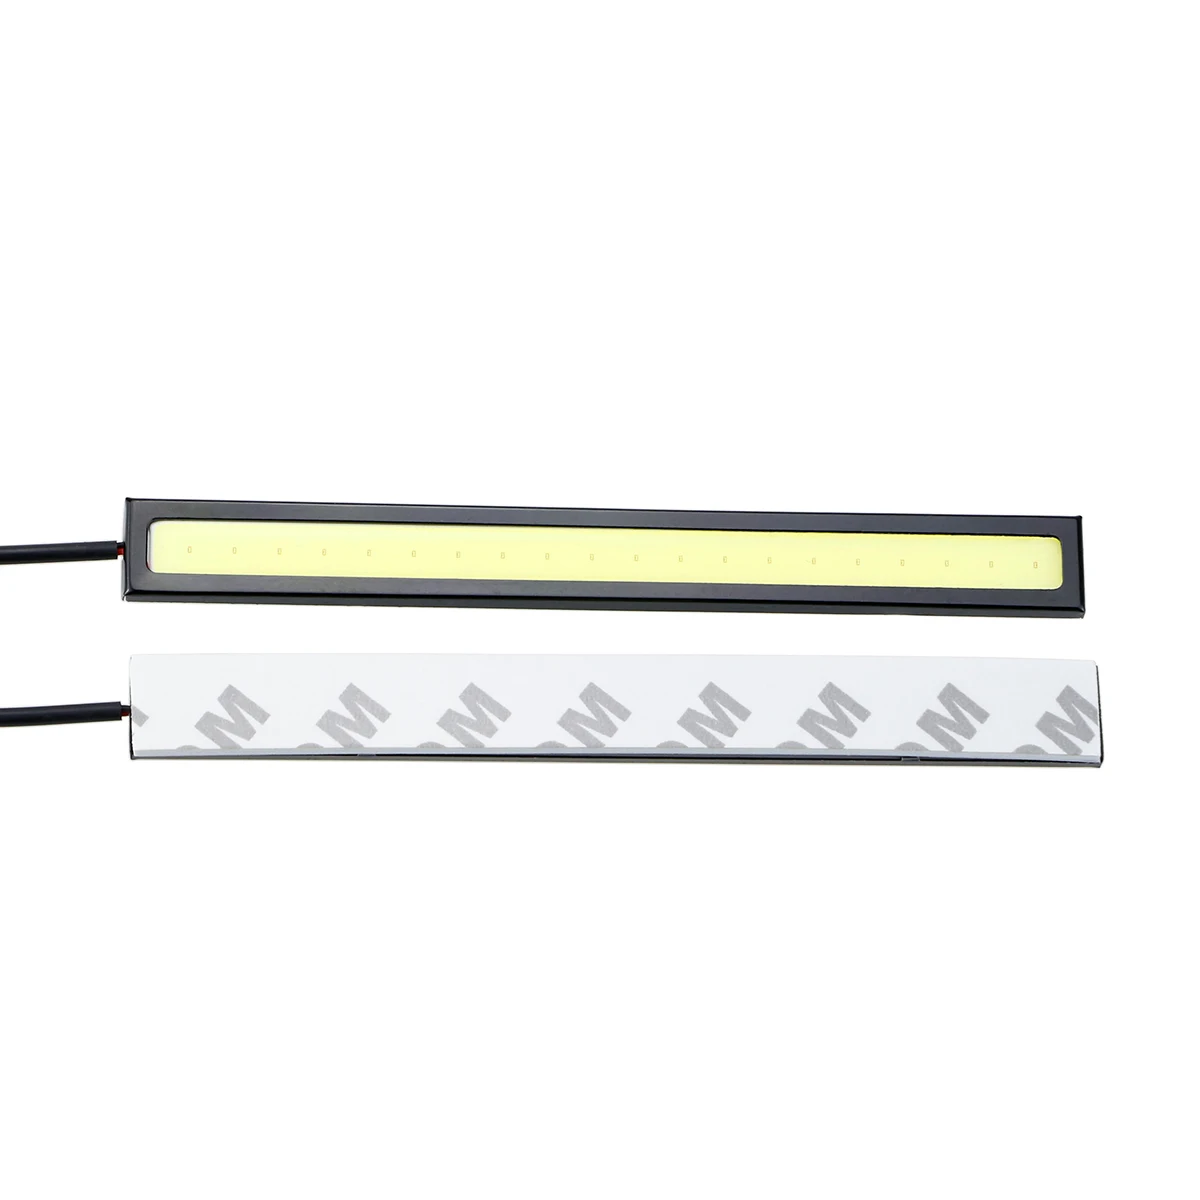 Leadtops 10 шт. 17 см COB DRL Дневные Бег свет для автомобилей LED Внешнее освещение Водонепроницаемый 12 В водить автомобиль стайлинг авто свет EJ